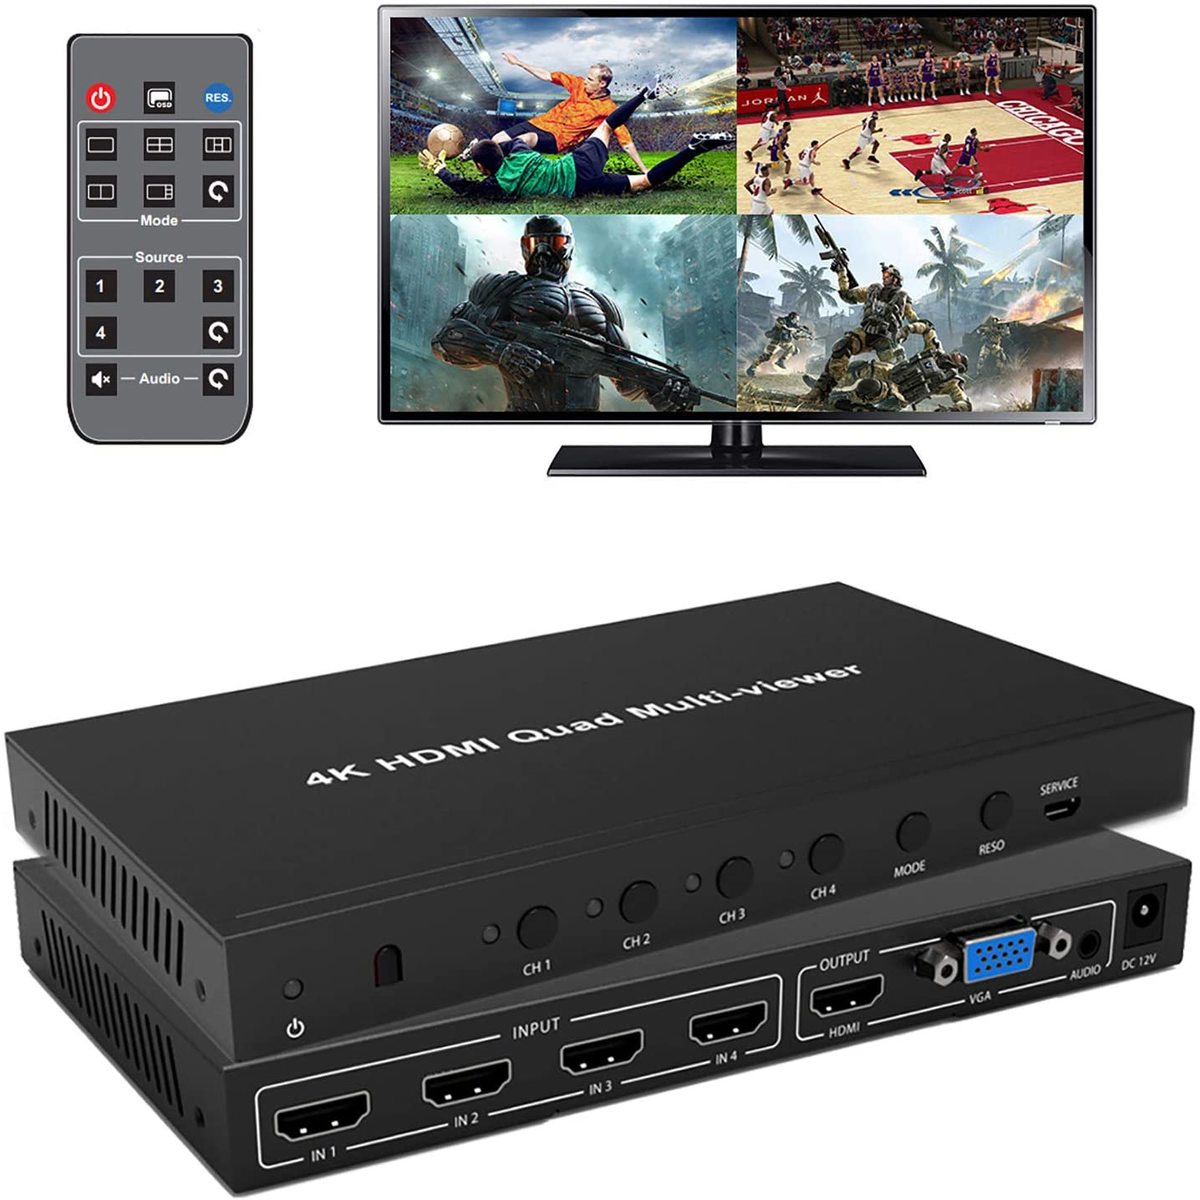 ビデオ分配器 音声分離器 音声出力チャンネル切替可能 ES-Tune HDMI画面分割器 マルチビューワー 4K対応 4入力2出力 日本語取扱説明書付 VGA HDMI 付与 価格 交渉 送料無料